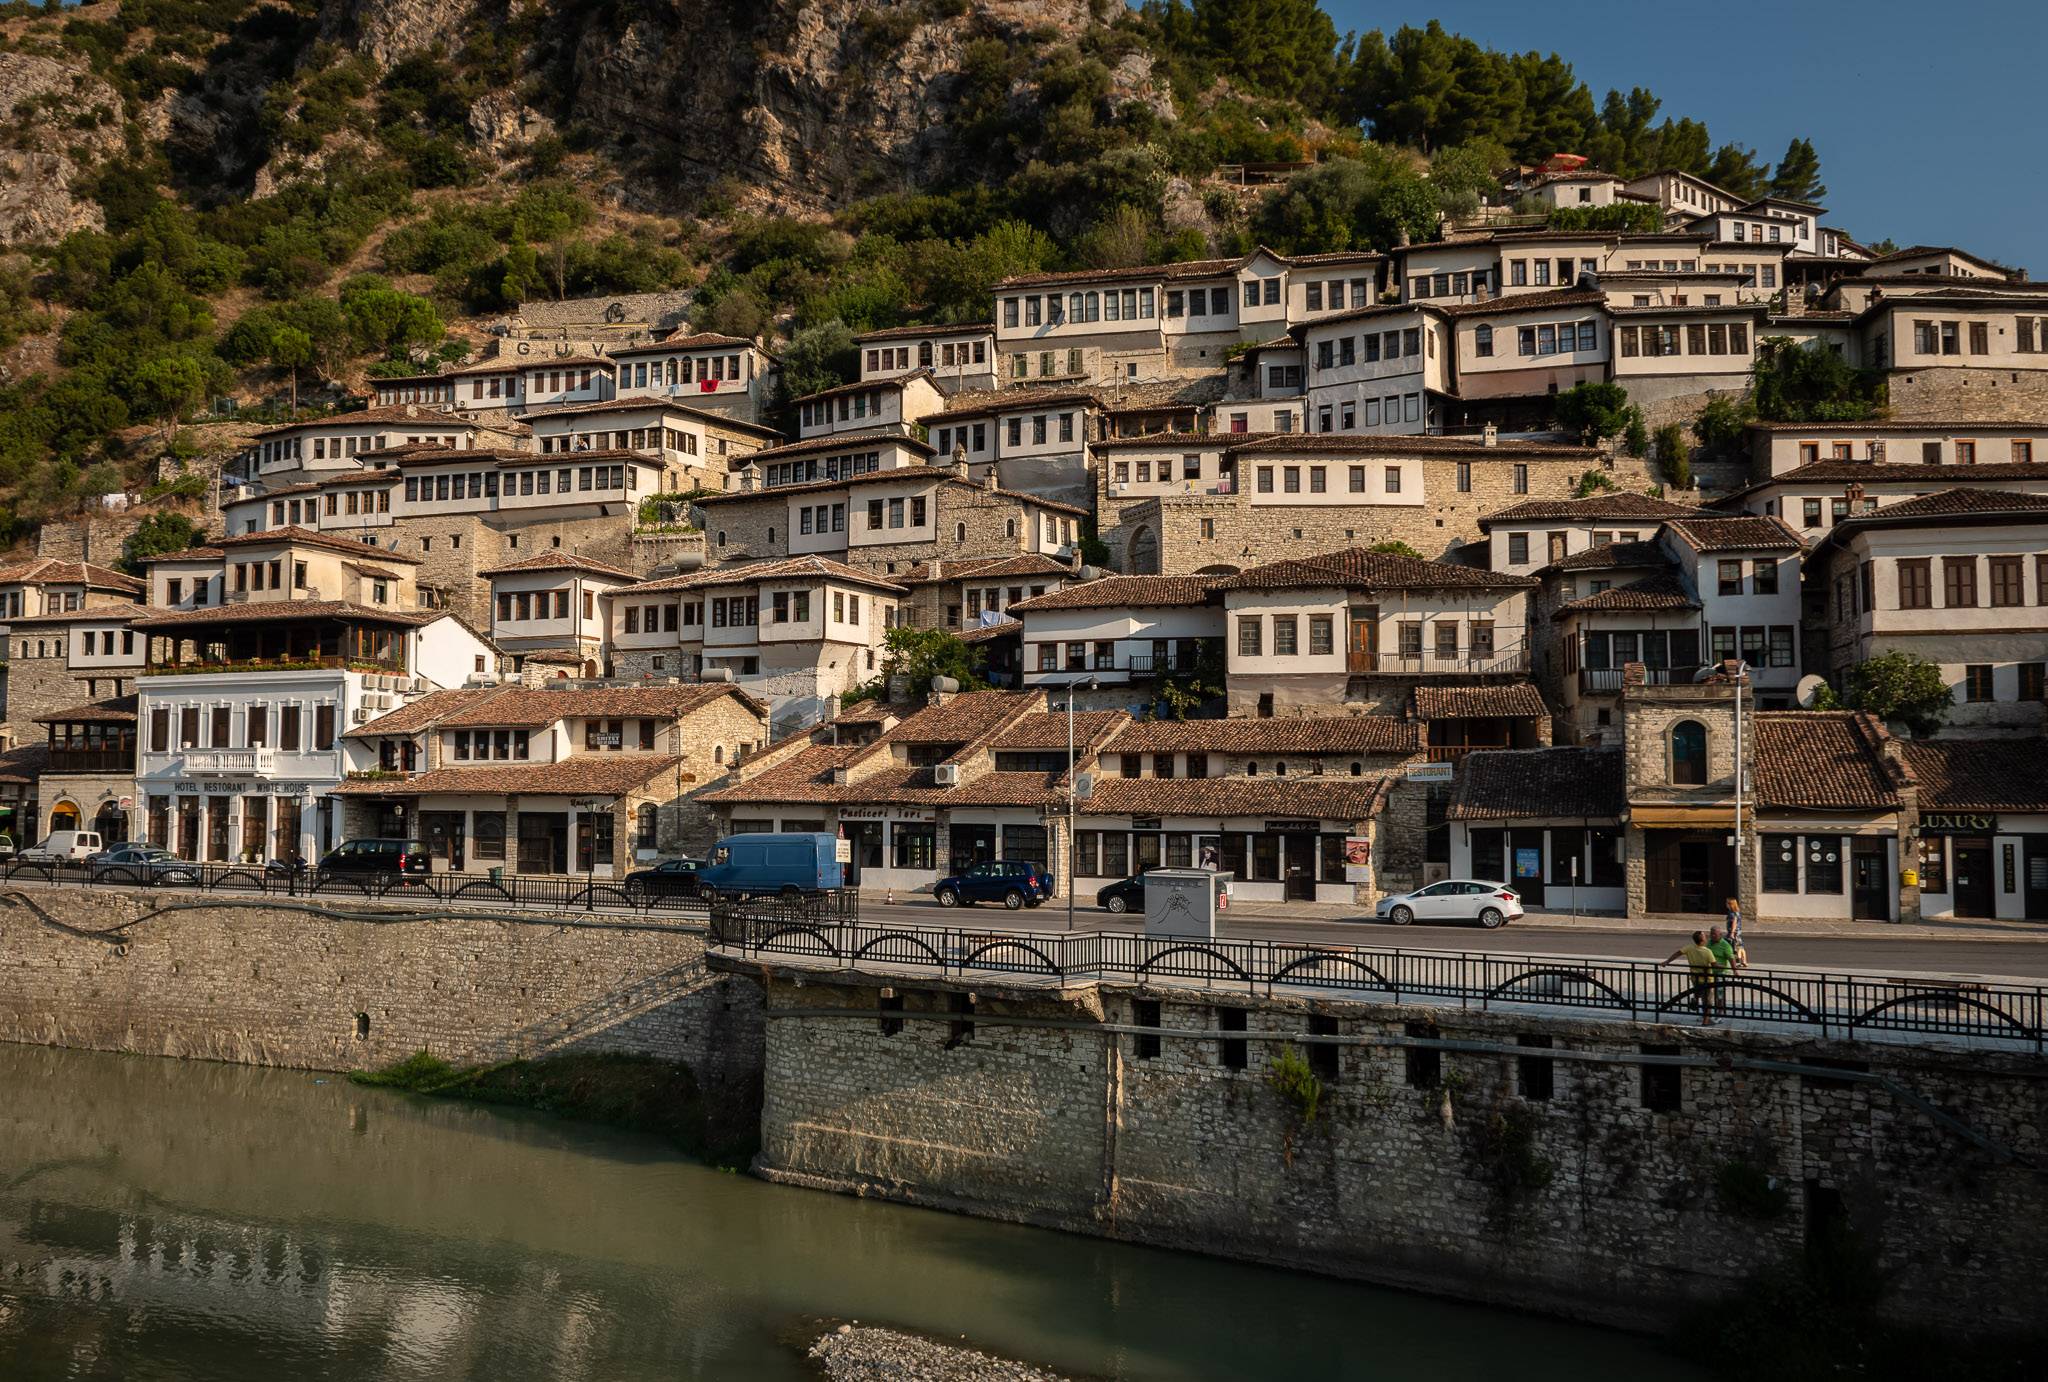 The 1000 Windows of Berat, Albania